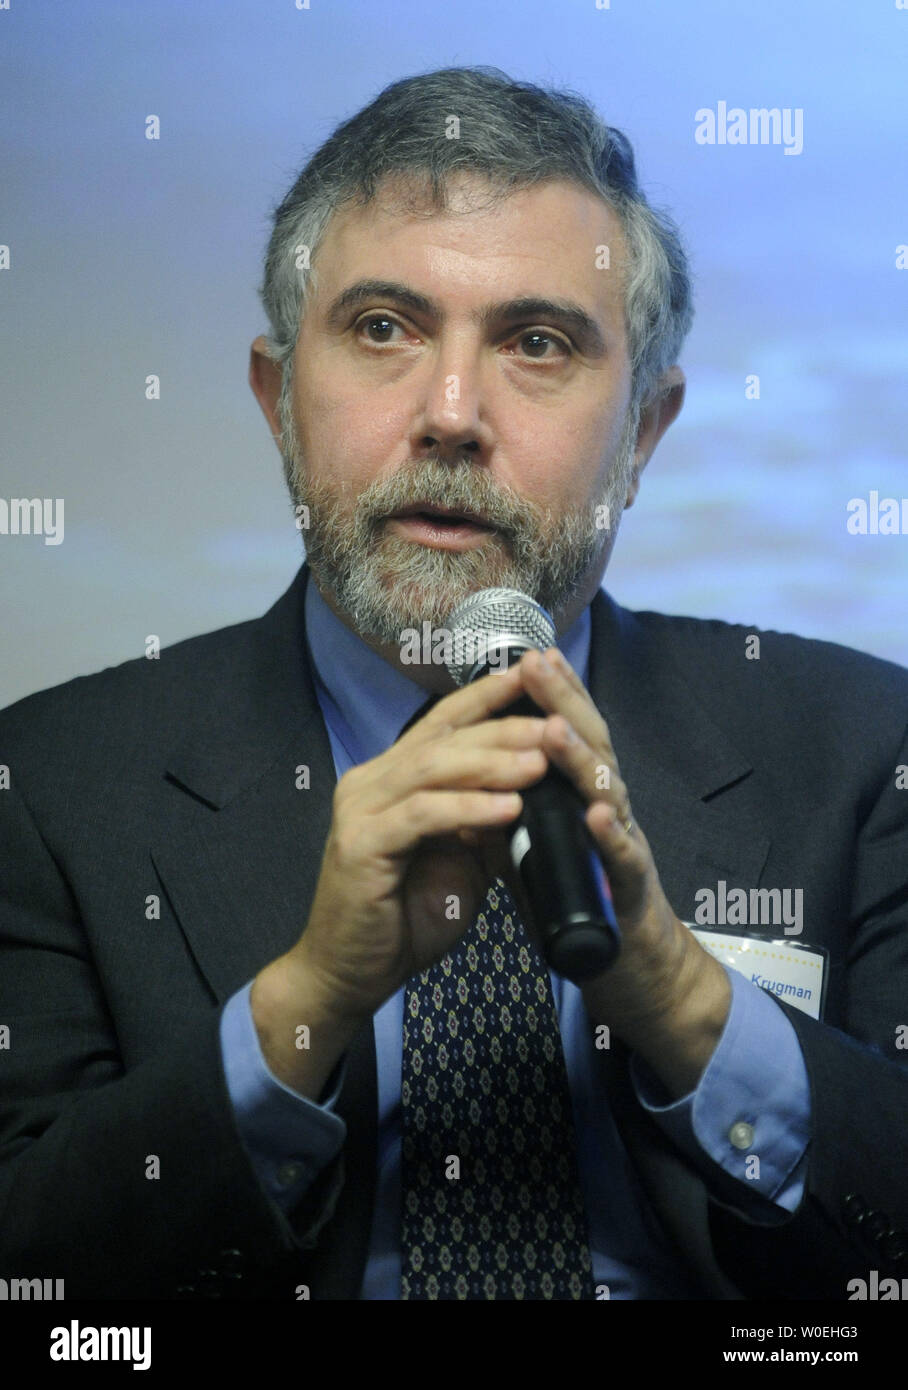 El Dr. Paul Krugman, ganador del Premio Nobel de Economía en 2008, habla en un simposio sobre los laureados del Premio Nobel norteamericano y cómo su investigación mejorará la vida, en la Embajada Sueca en Washington el 24 de noviembre de 2008. (UPI foto/Kevin Dietsch) Foto de stock